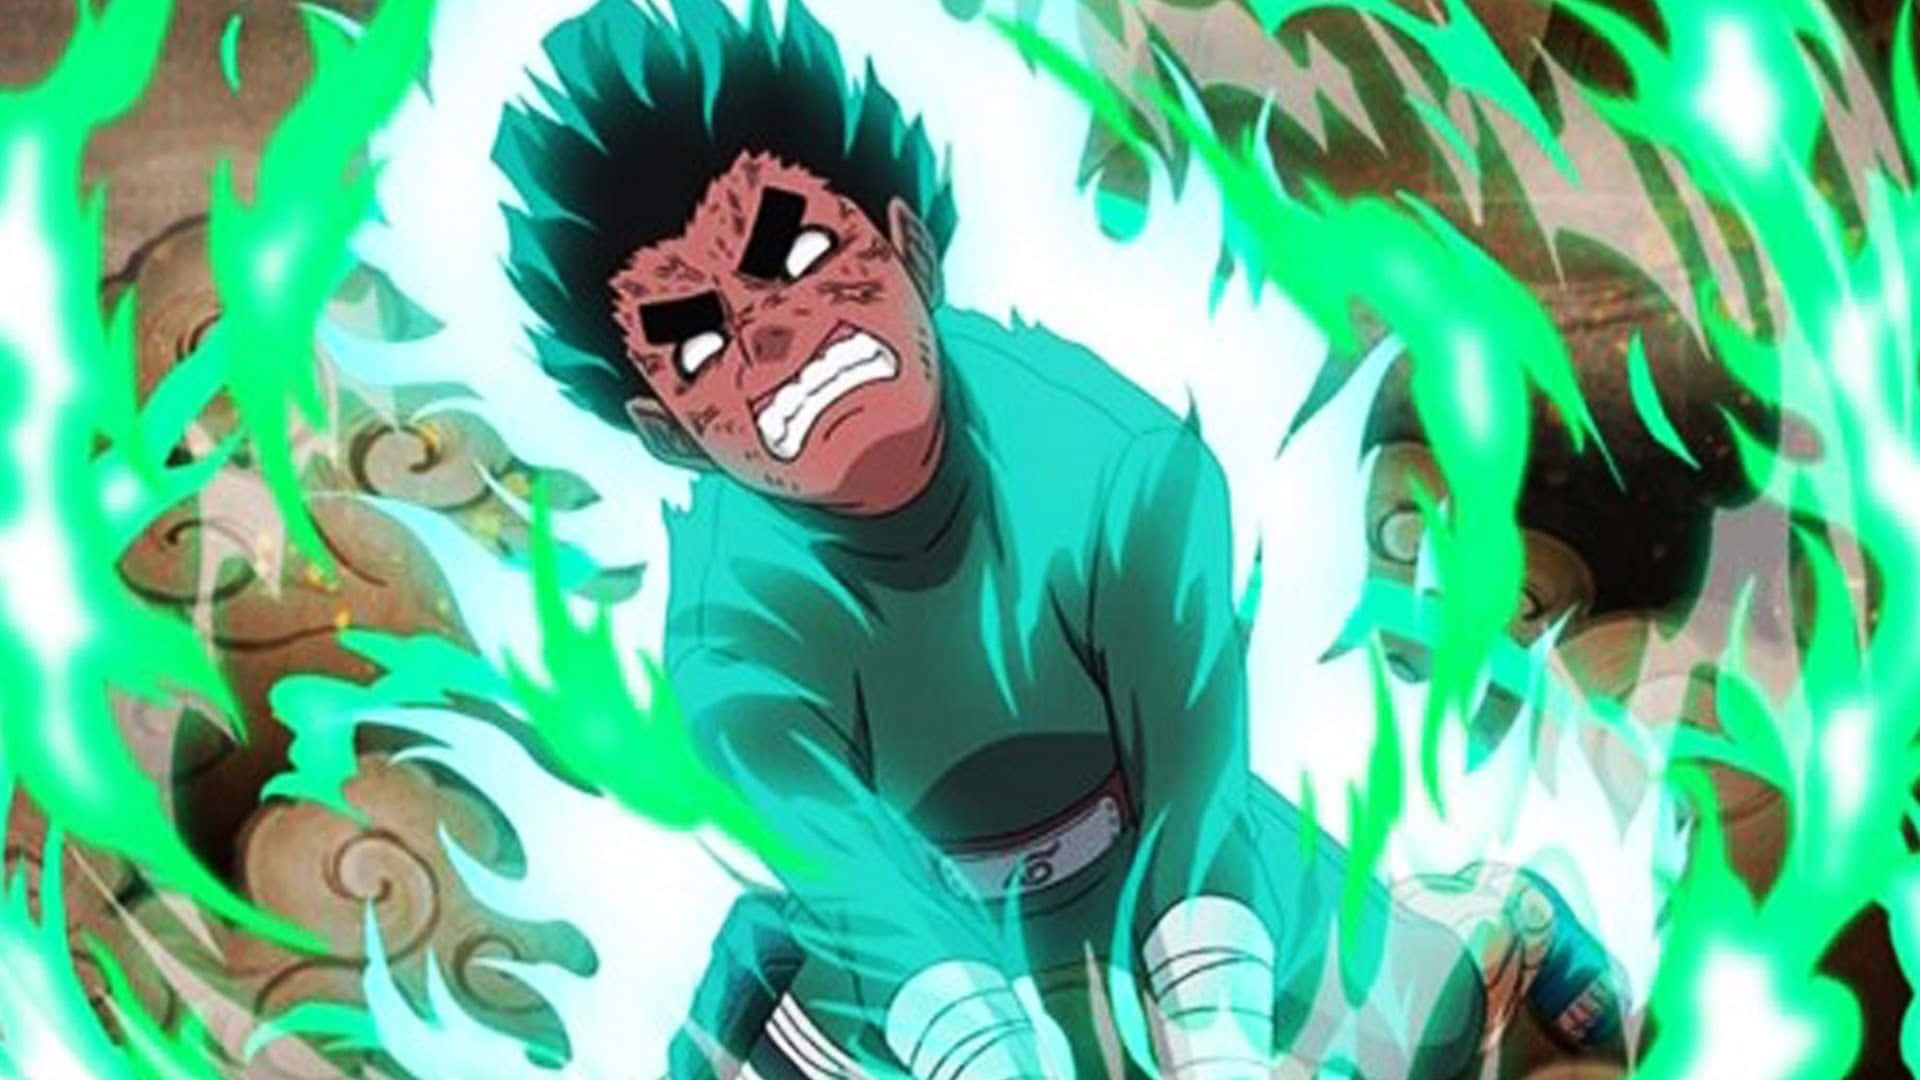 Unailustración De Naruto Vibrante Y Verde Que Captura El Espíritu Del Amado Anime. Fondo de pantalla